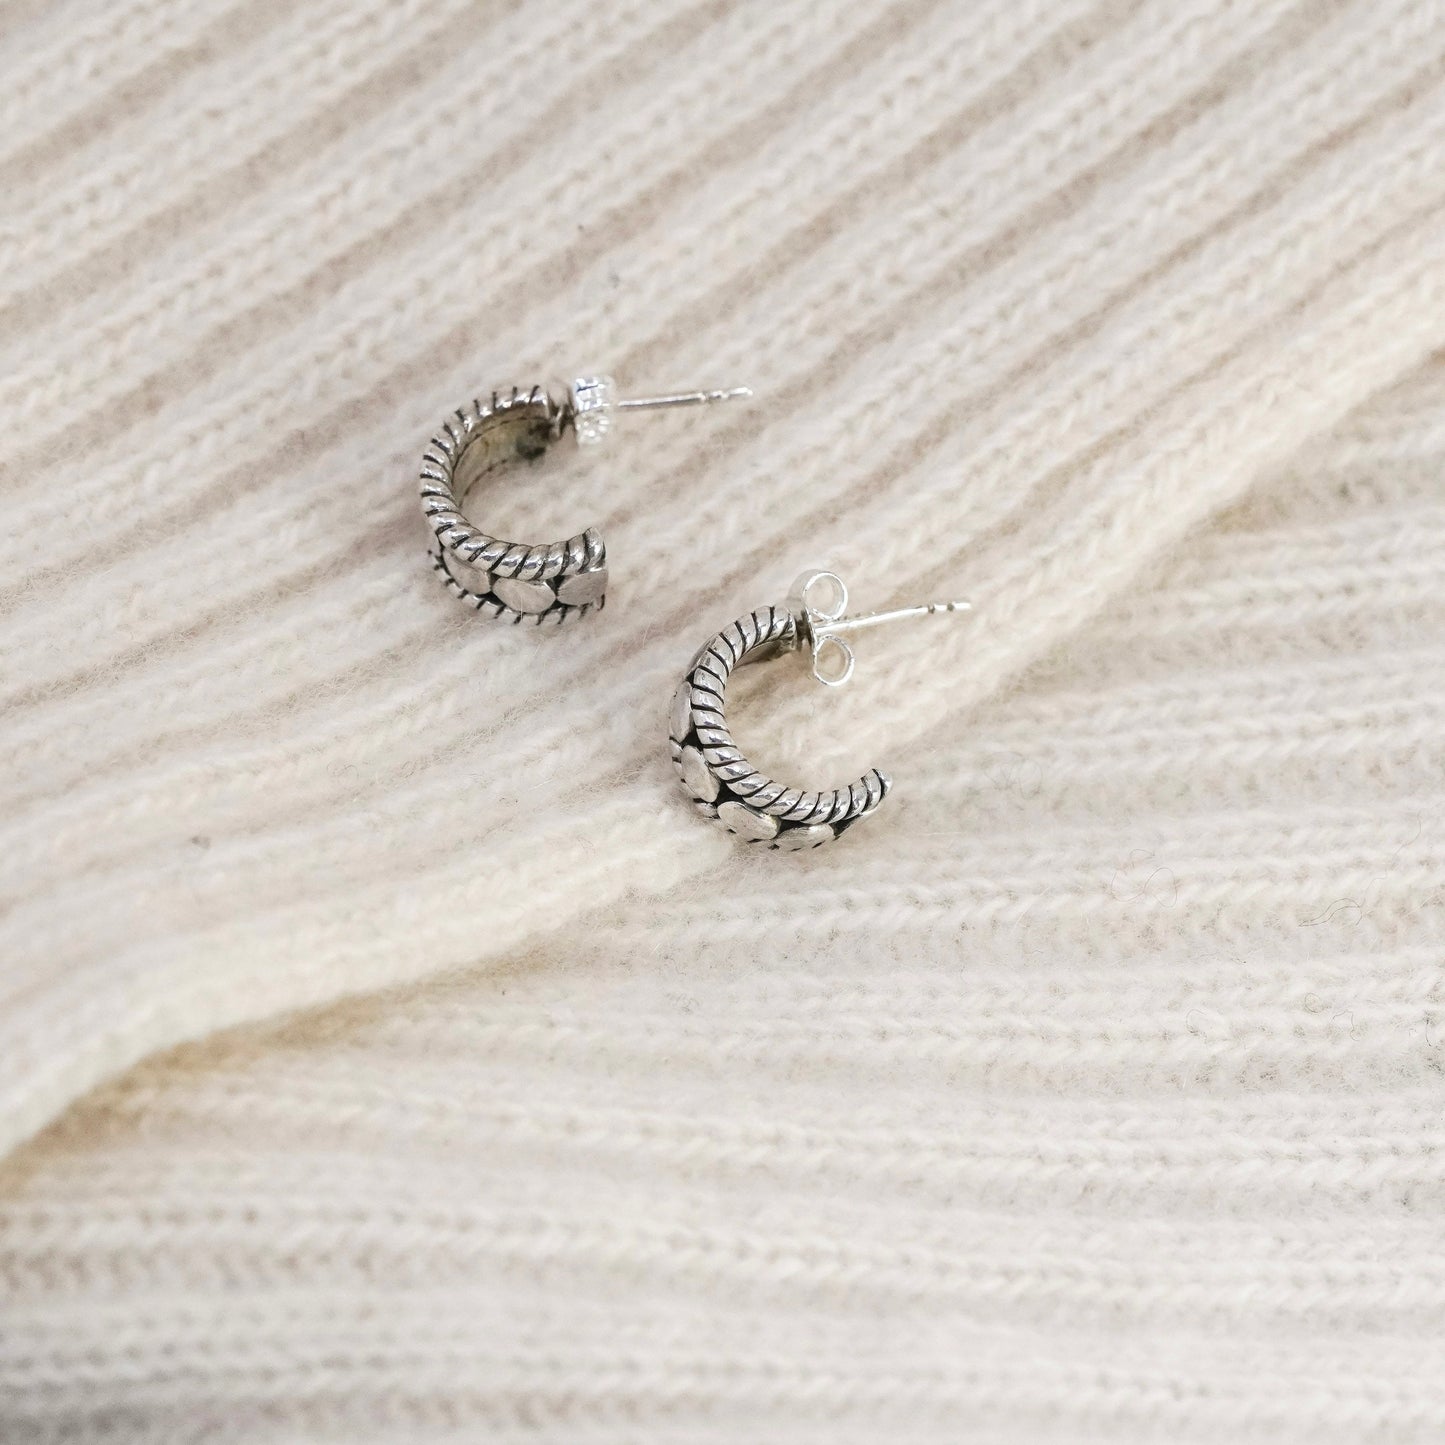 0.5”, Vintage Sterling silver handmade earrings, 925 Huggie hoops with beads